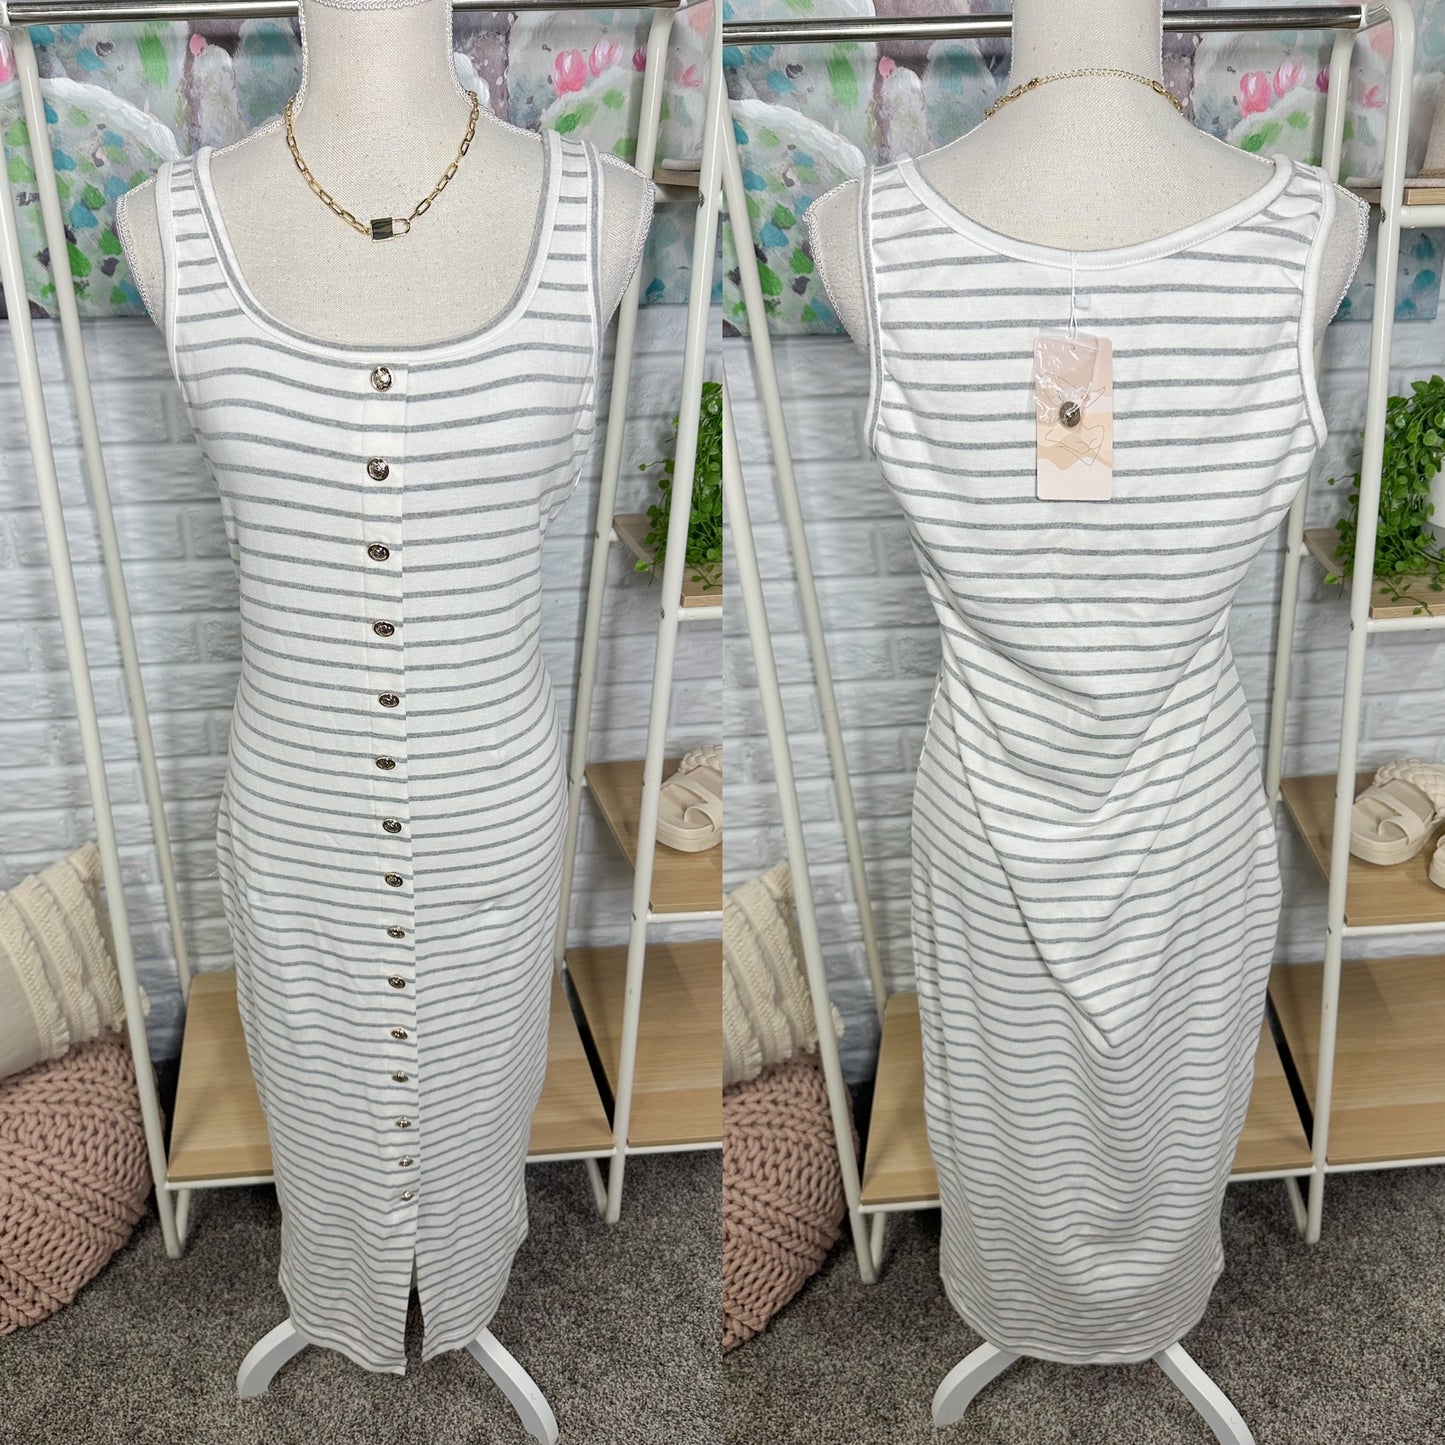 NOLLSOM New Striped Casual Midi Dress (S)